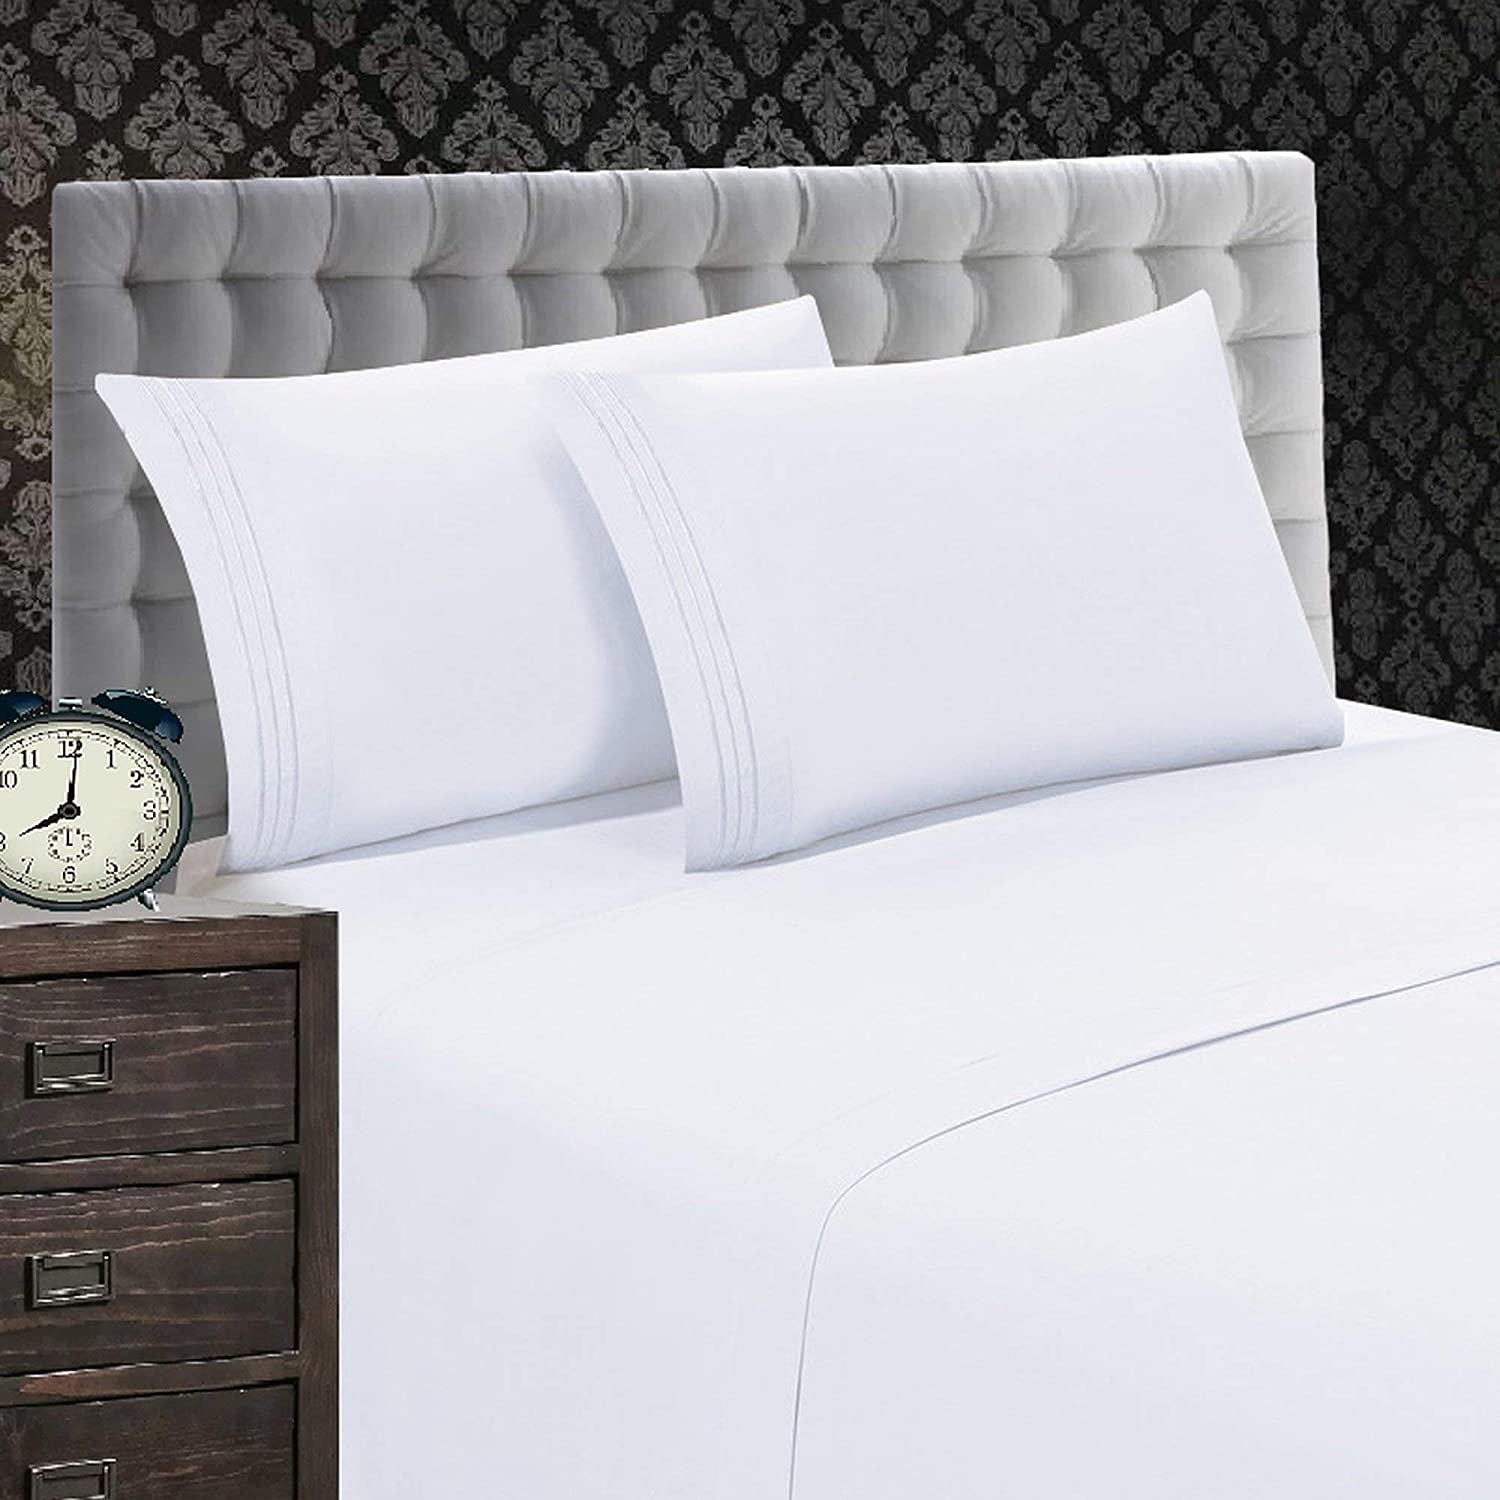 Elegant Comfort Elegant Super Soft Bed Sheets